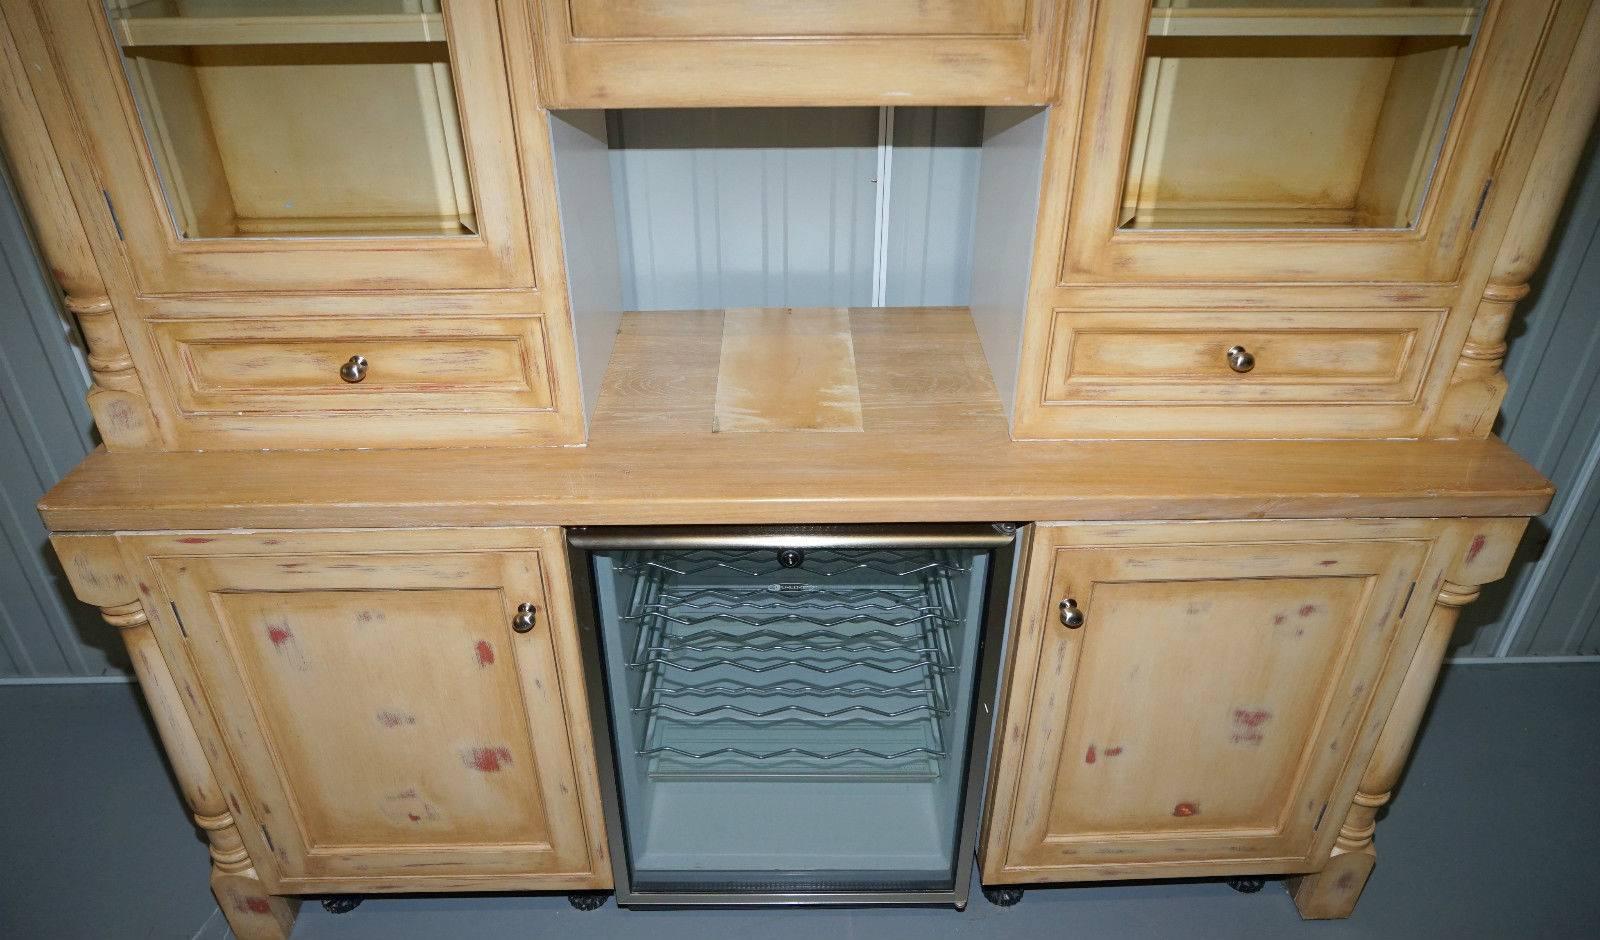 Edwardian Solid Oak Break Front Kitchen Cupboards Welsh Dresser with Built-in Wine Fridge